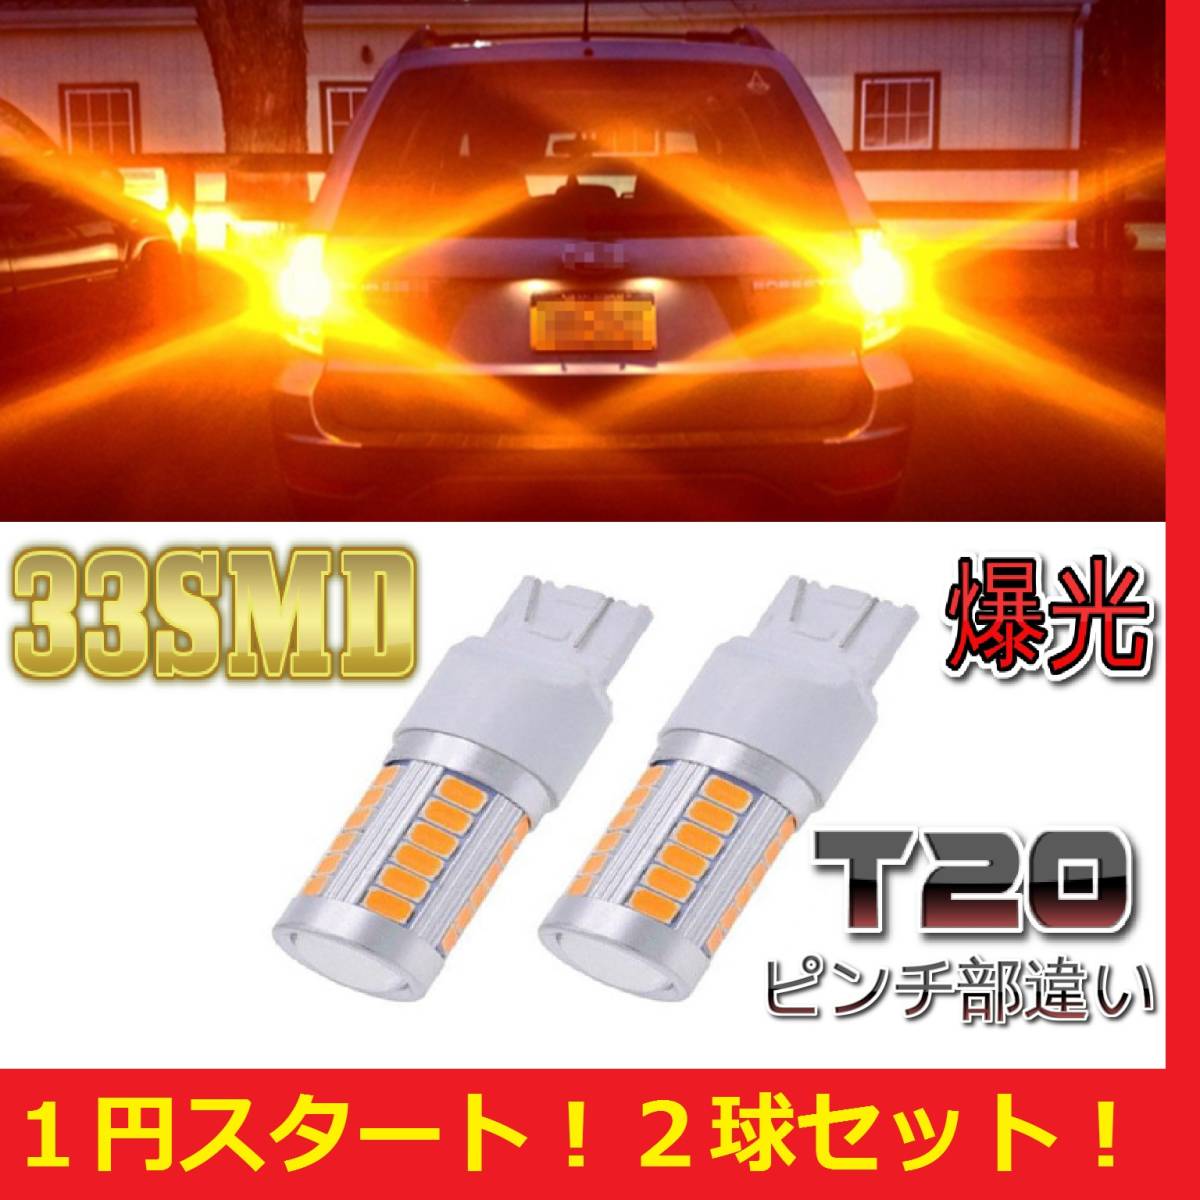 * Step WGN и т.п. *1 иен старт **. свет T20 LED указатель поворота янтарь желтый 2 лампочка комплект 33smd стоимость доставки дешевый 140 иен 